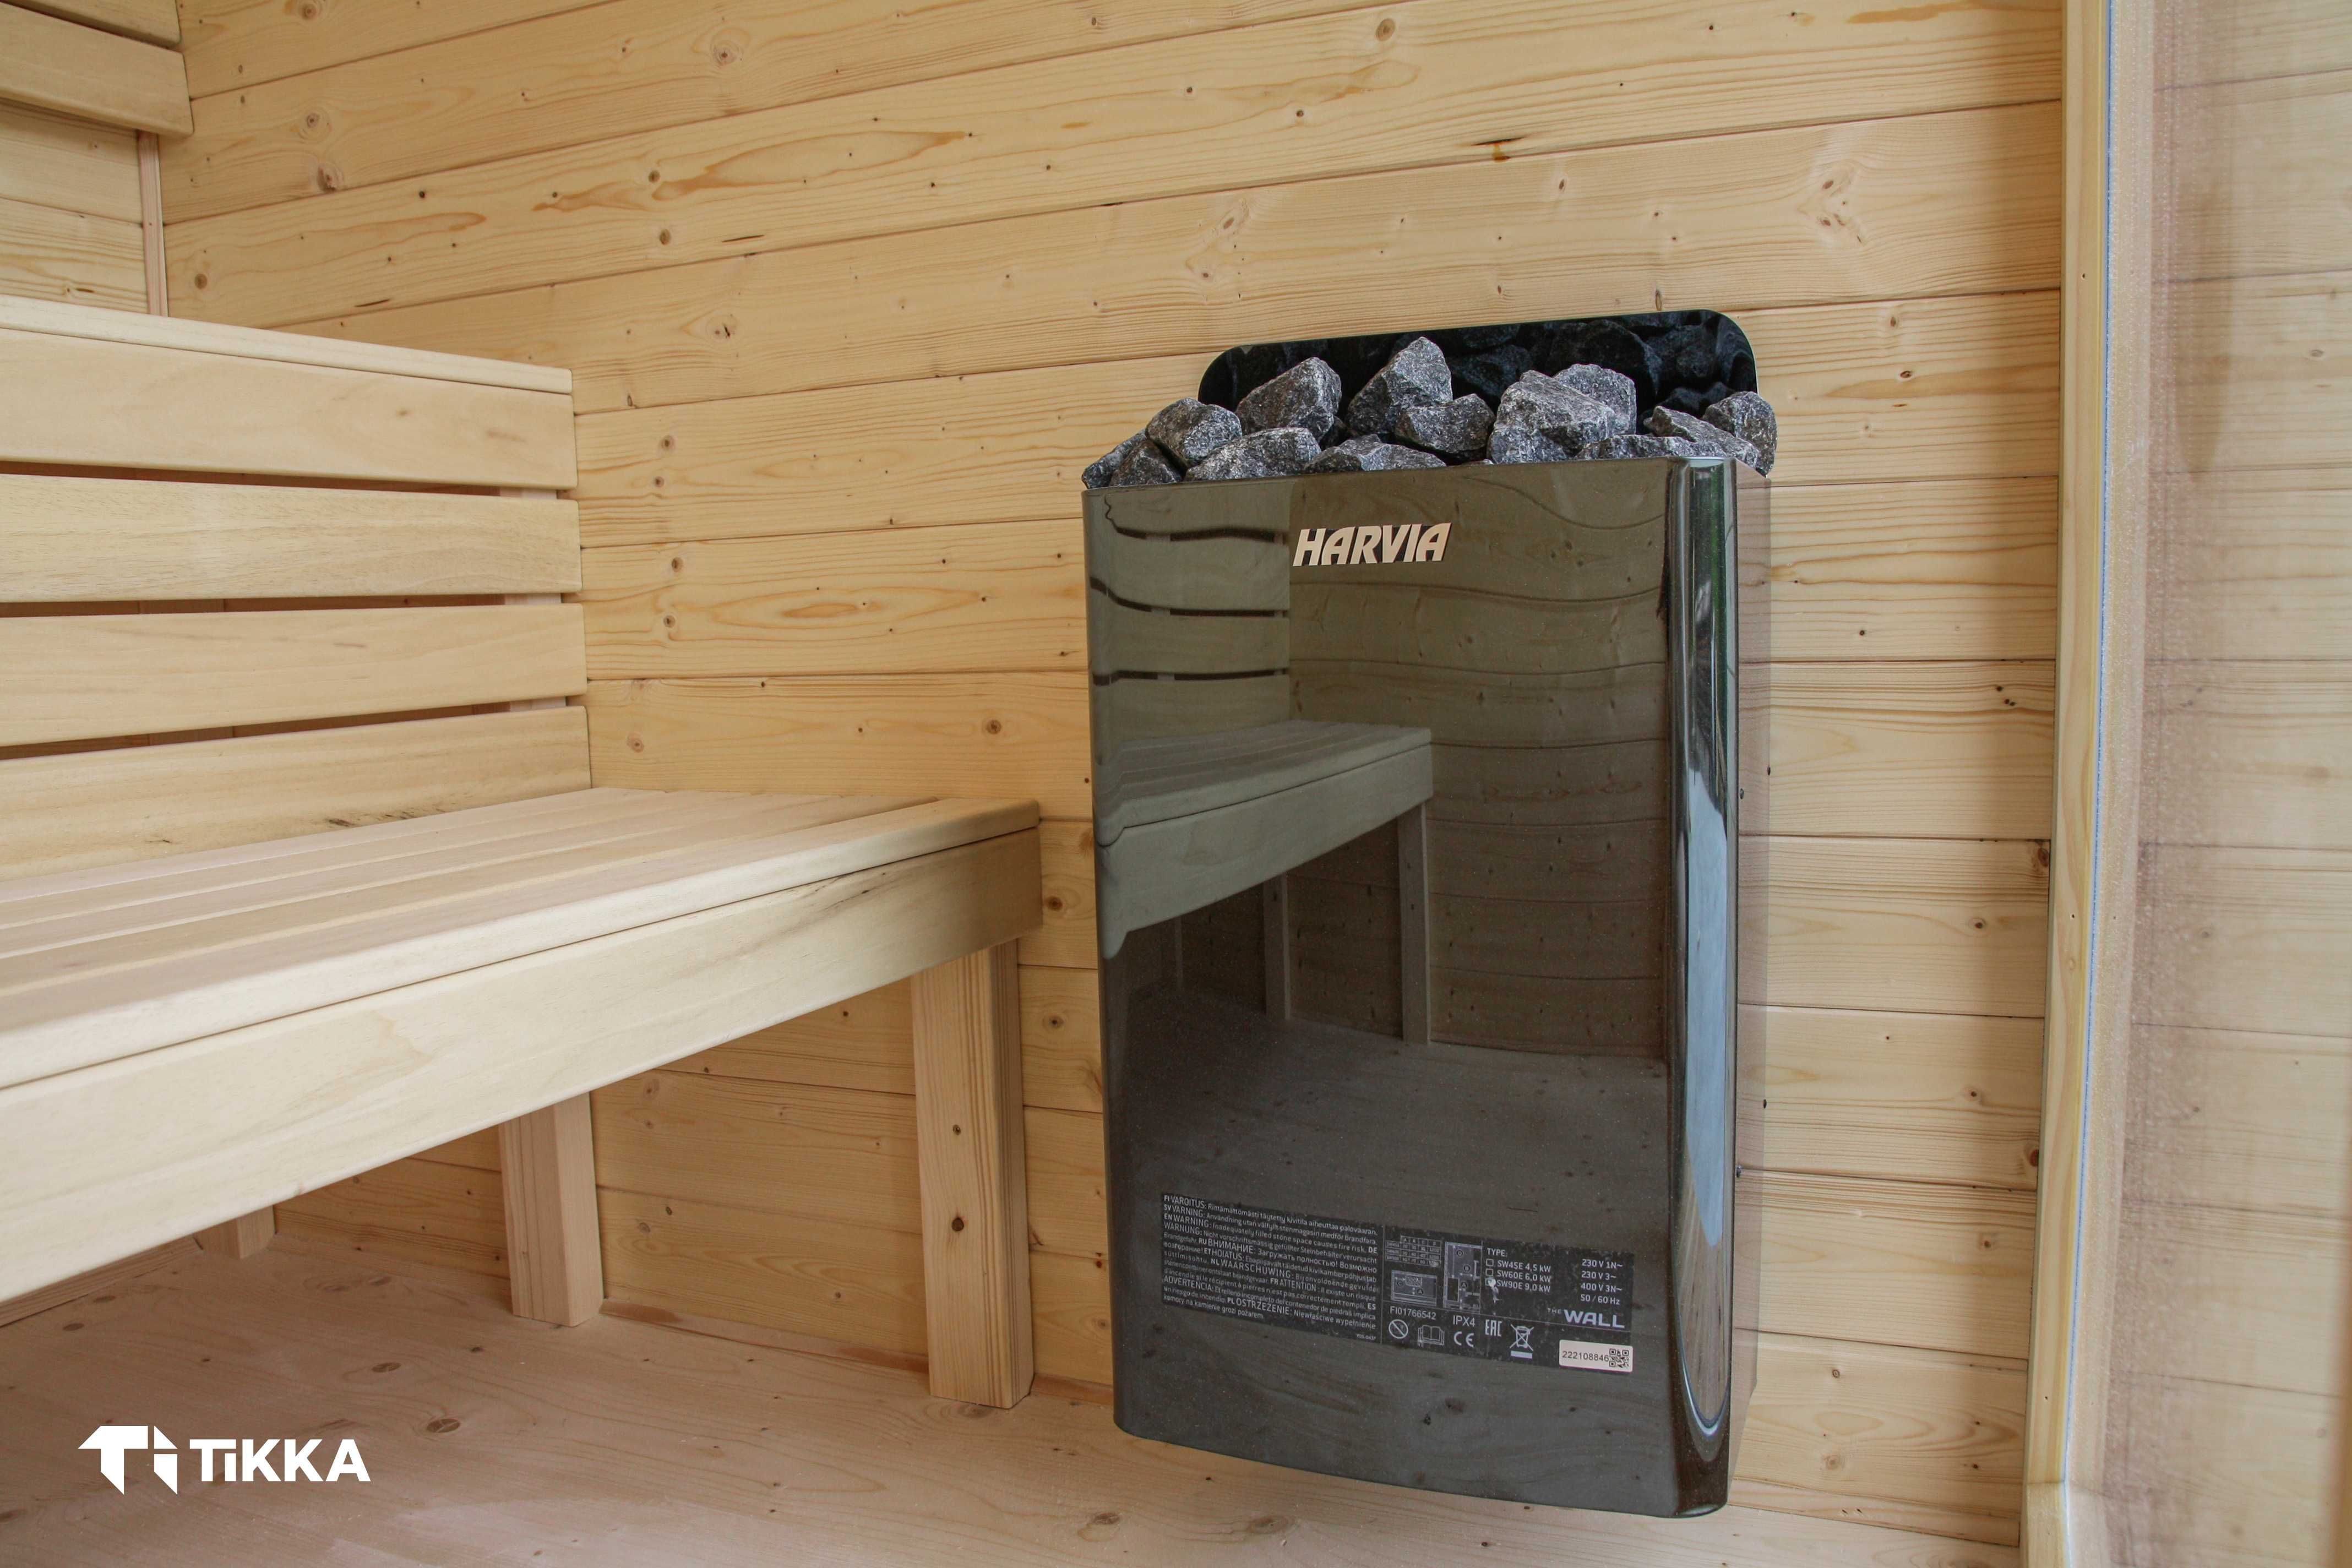 Ekskluzywna Sauna Fińska Ocieplona, Z Wi-Fi Gotowa do Twojego ogrodu